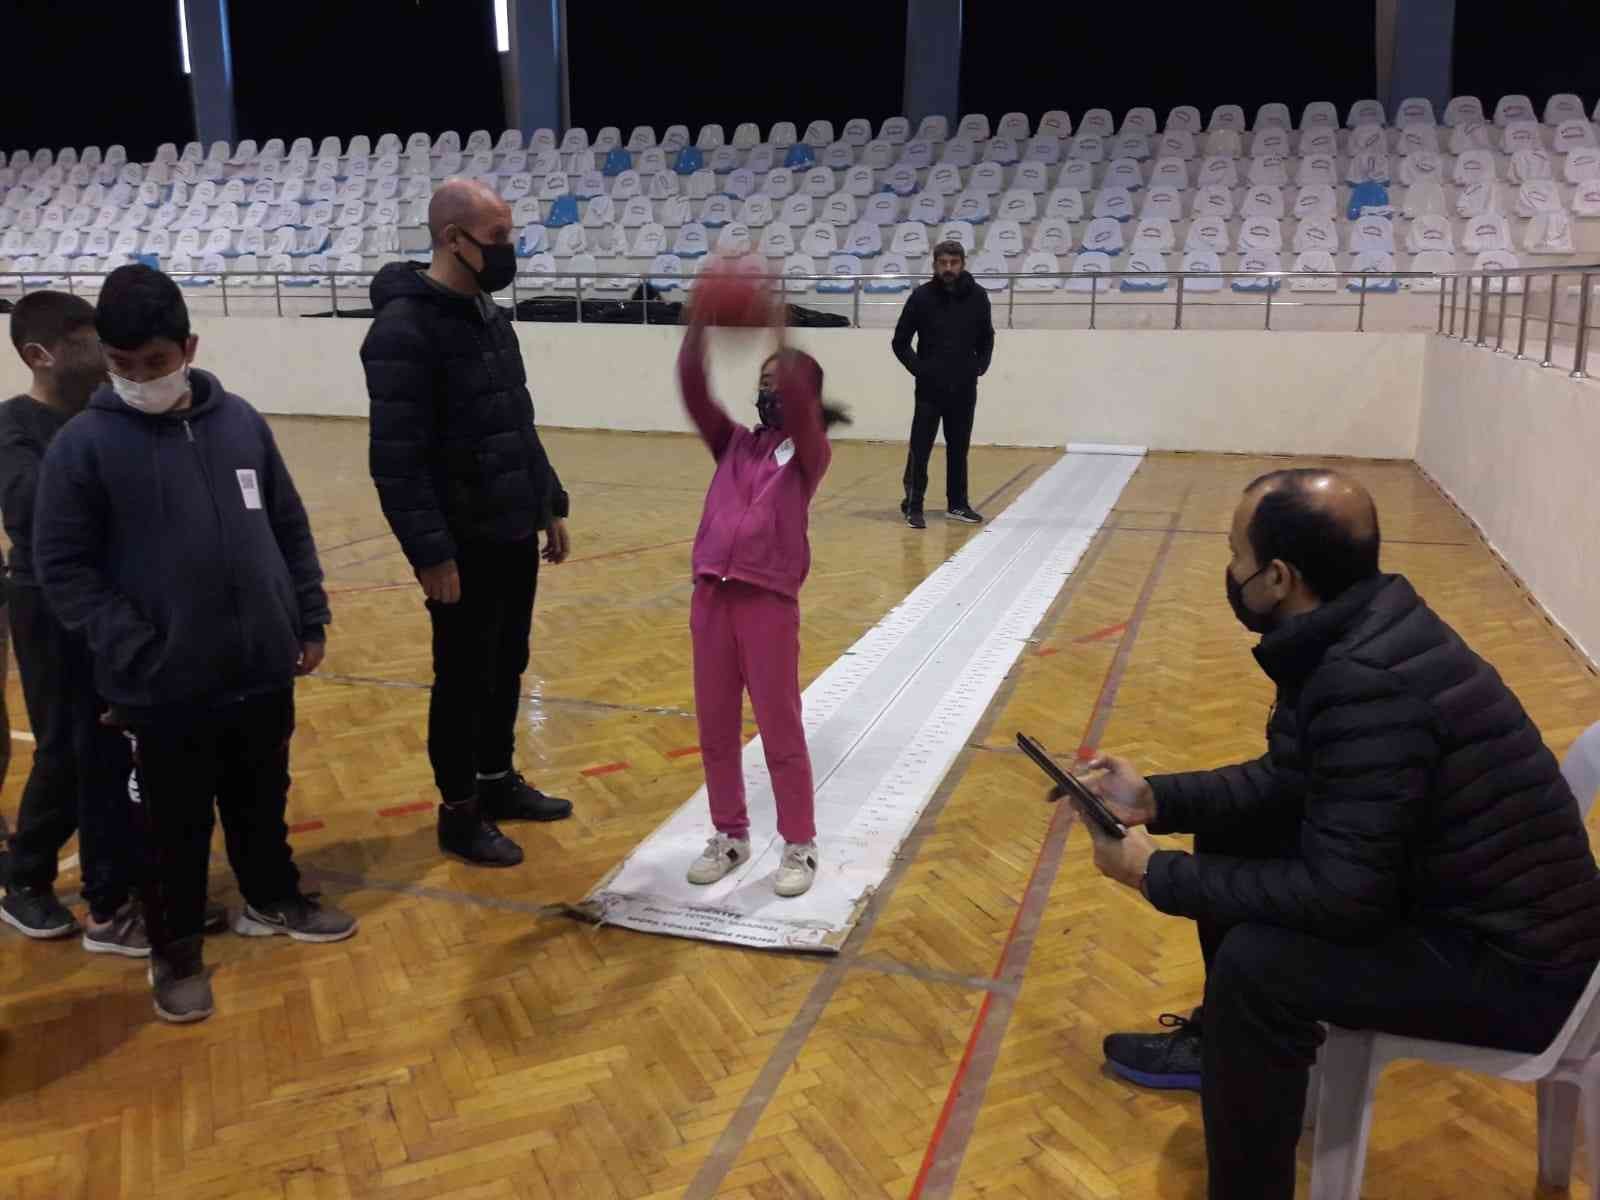 228 öğrenci spora yönlendirme testinden geçirildi #antalya